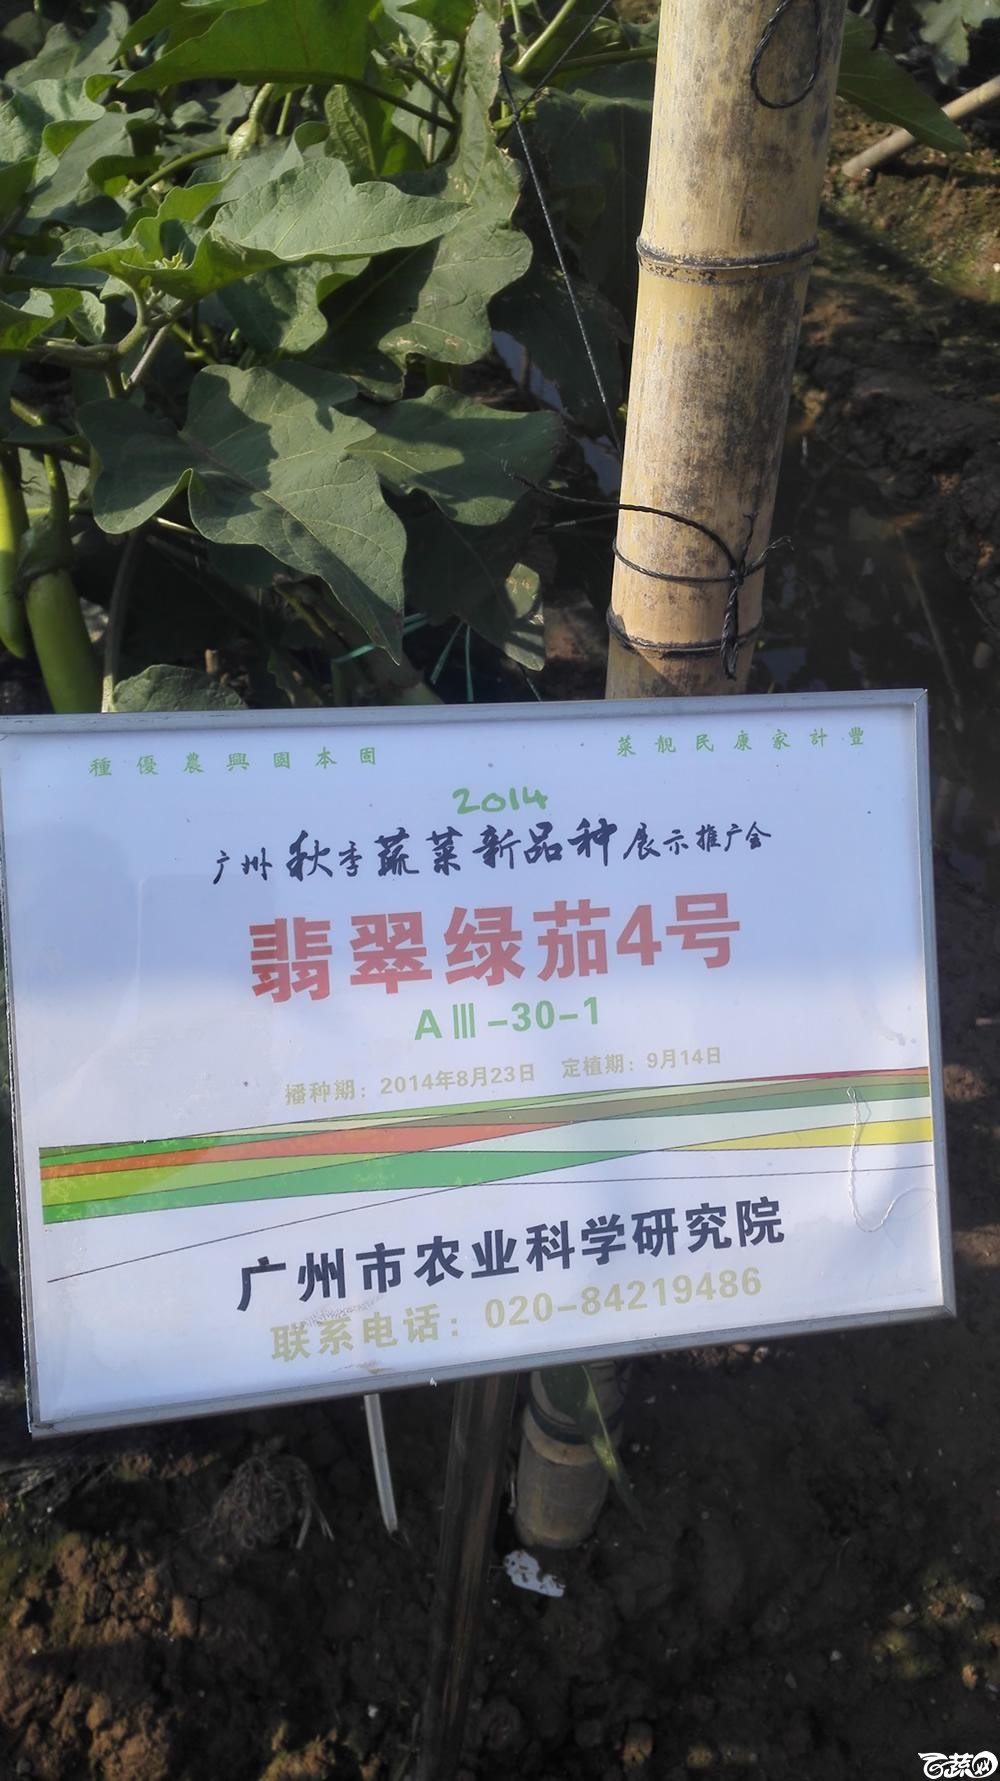 2014年12月10号广州市农科院南沙秋季蔬菜新品种展示会 茄子_020.jpg